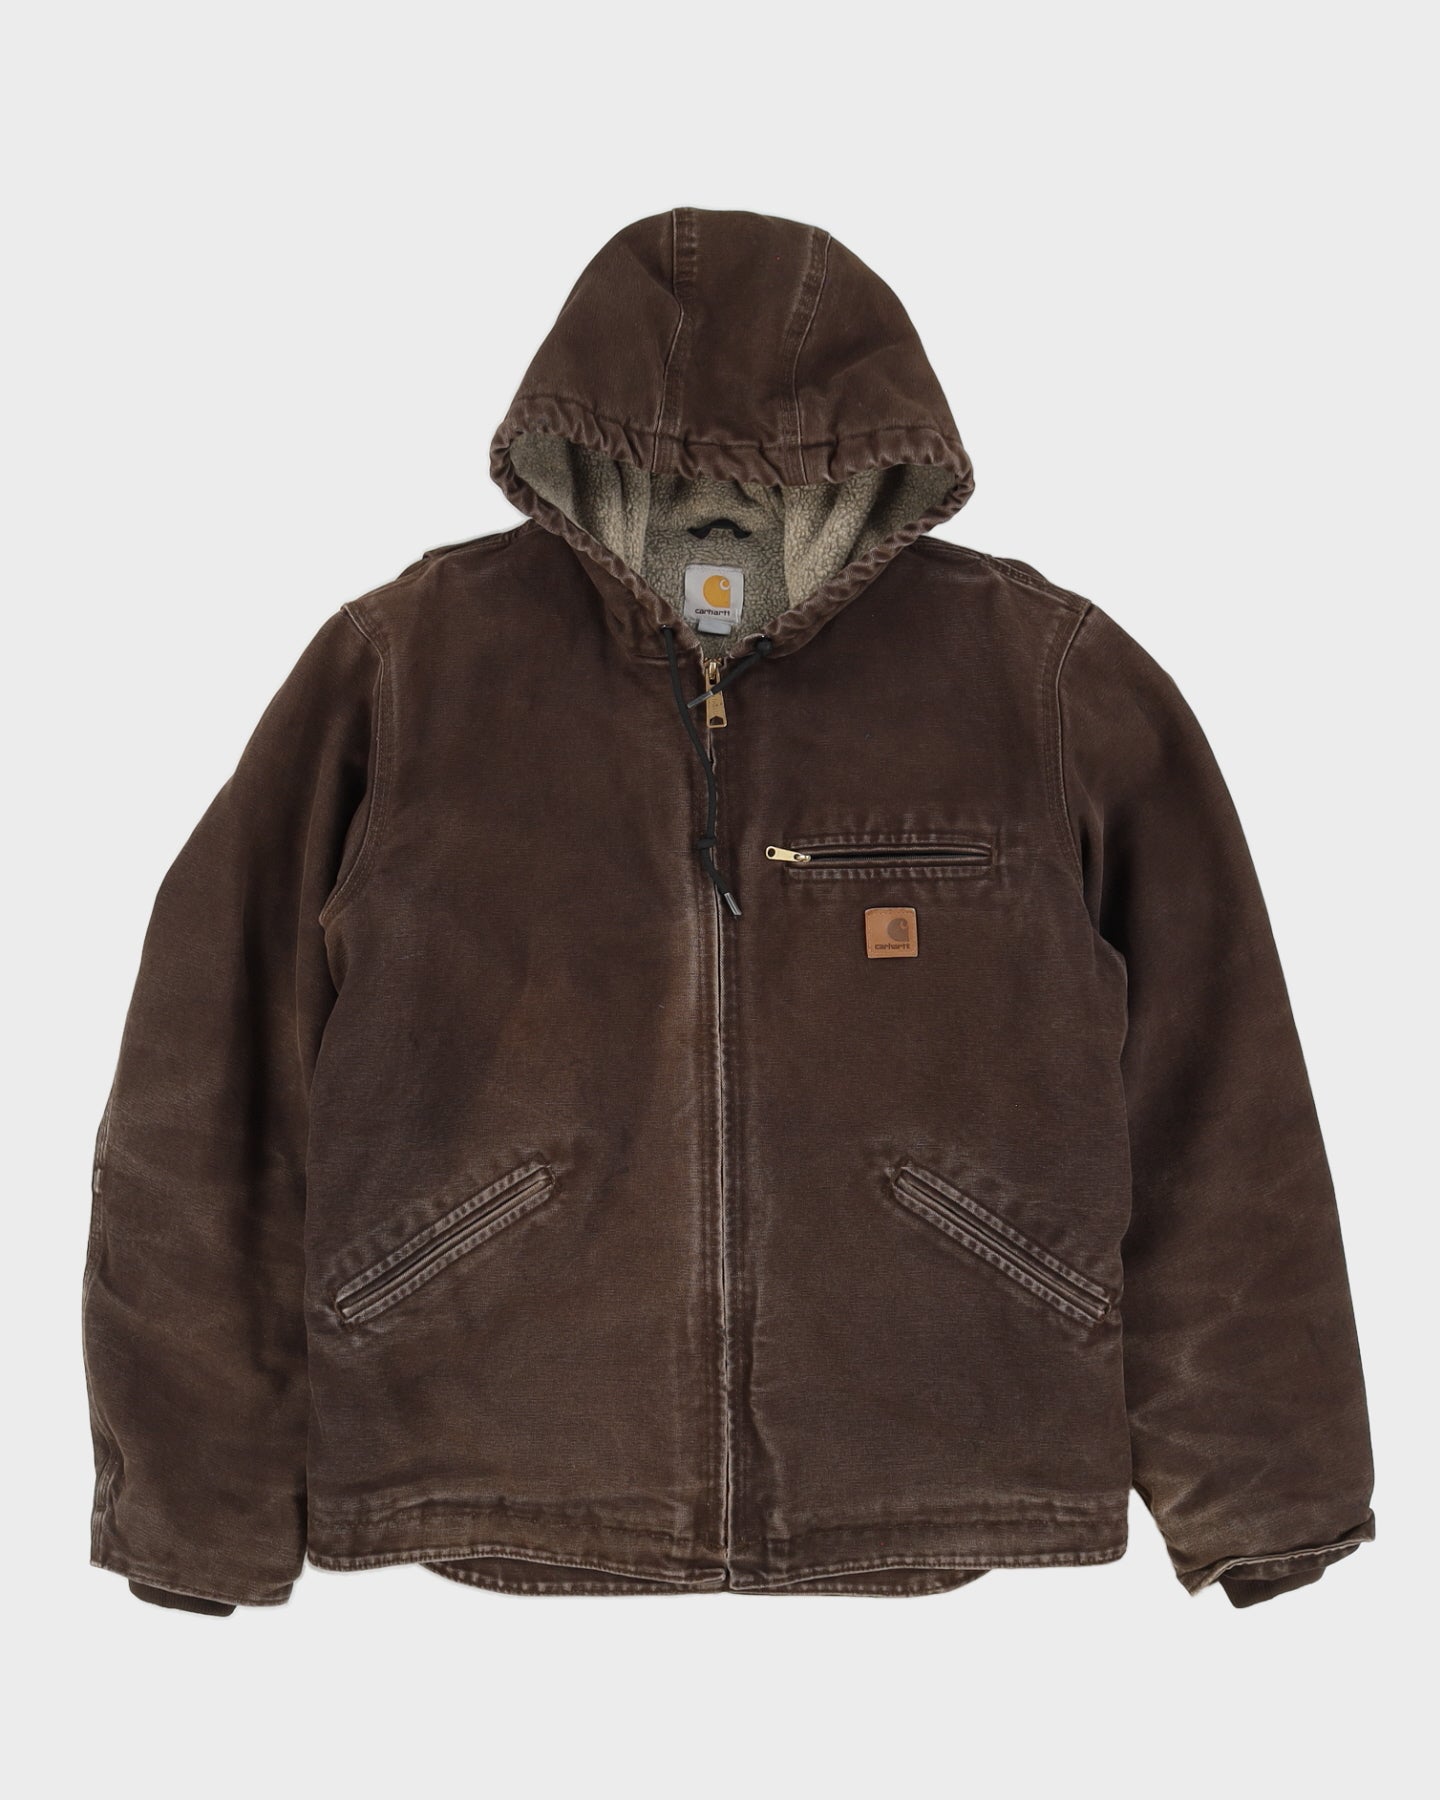 00s Carhartt Brown Workwear Hooded Fleece Lined Jacket - M